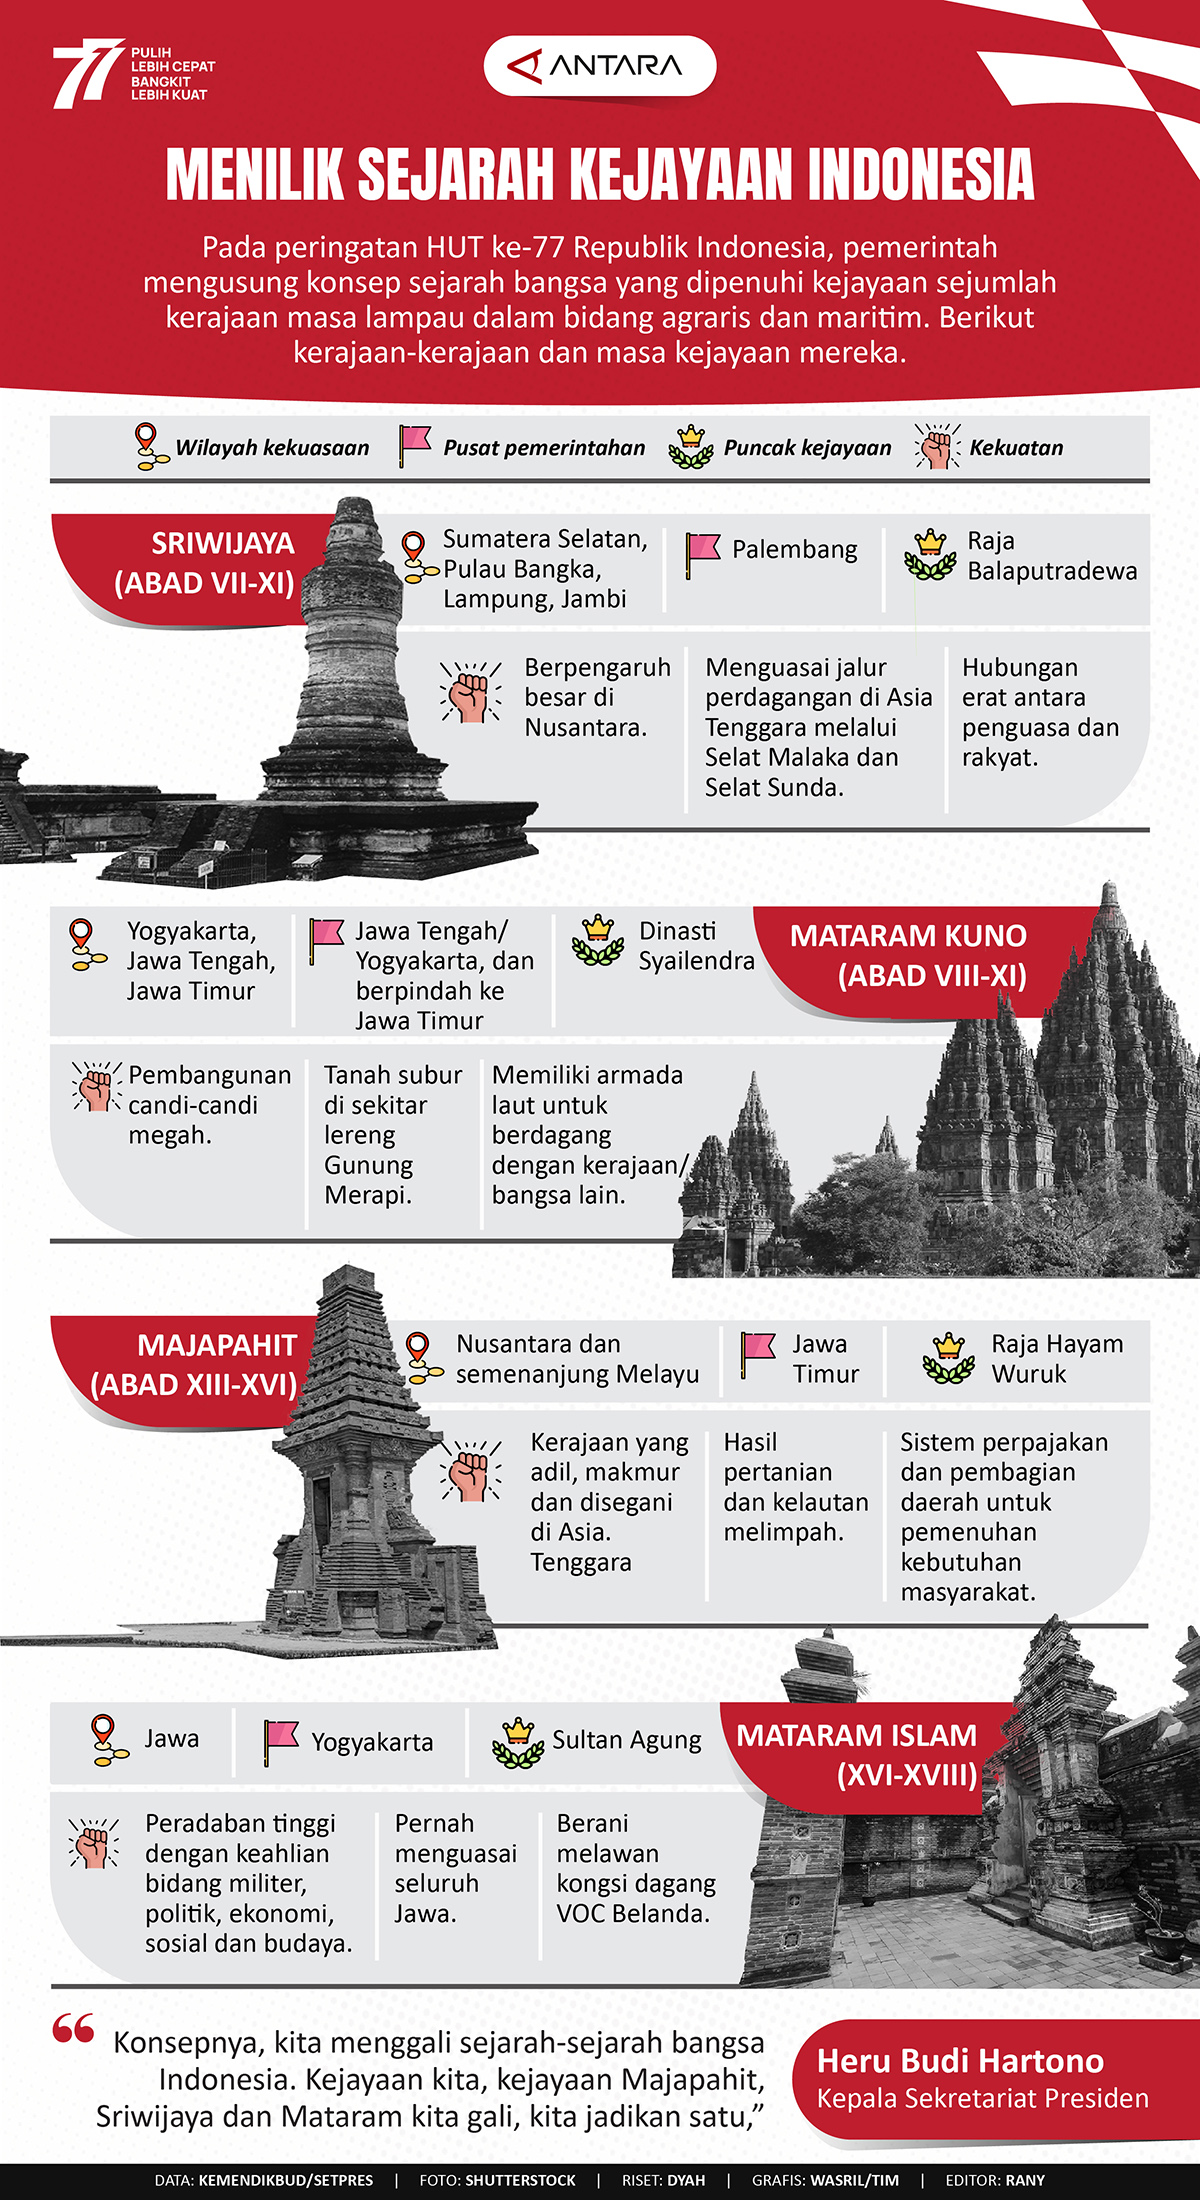 Menilik sejarah kejayaan Indonesia